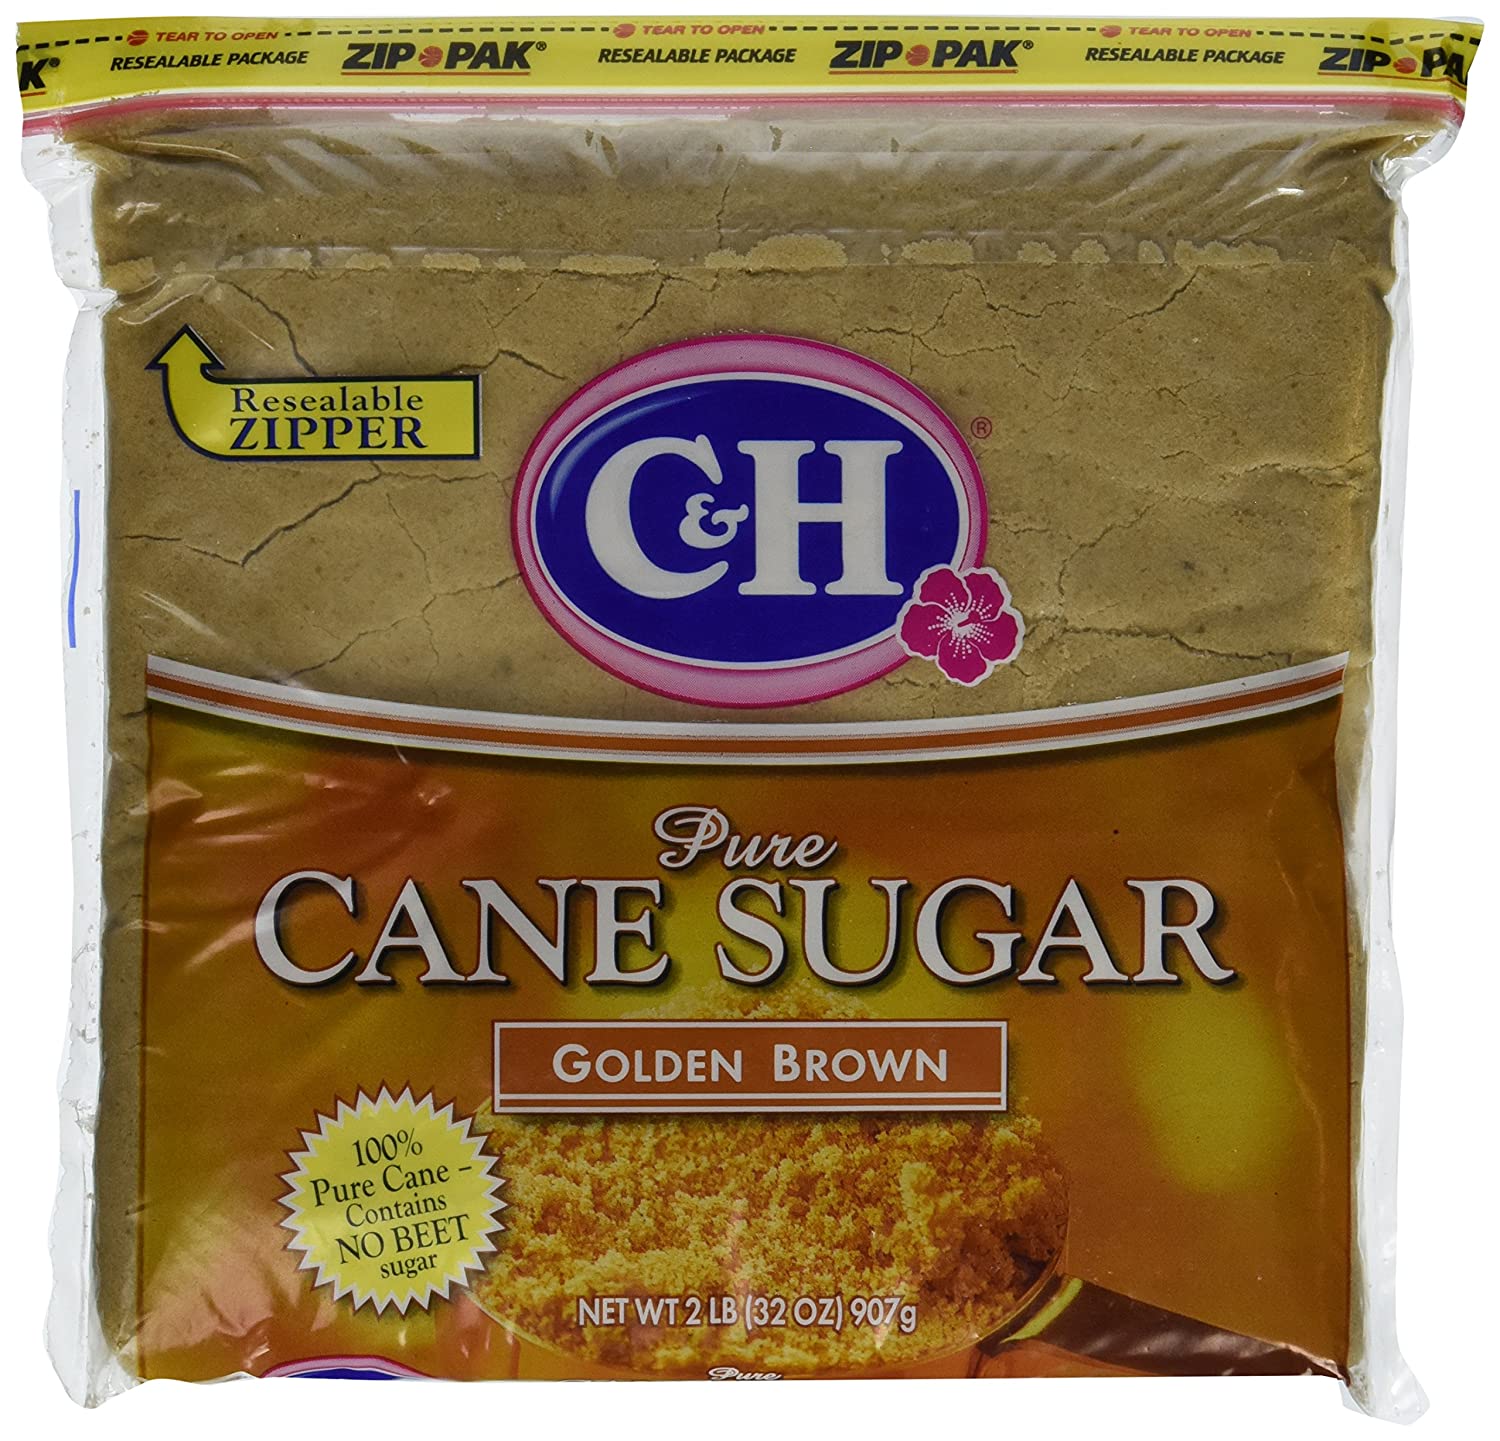 C&H Cane Sugar Golden Brown 2lb Bag (Pack of 2)